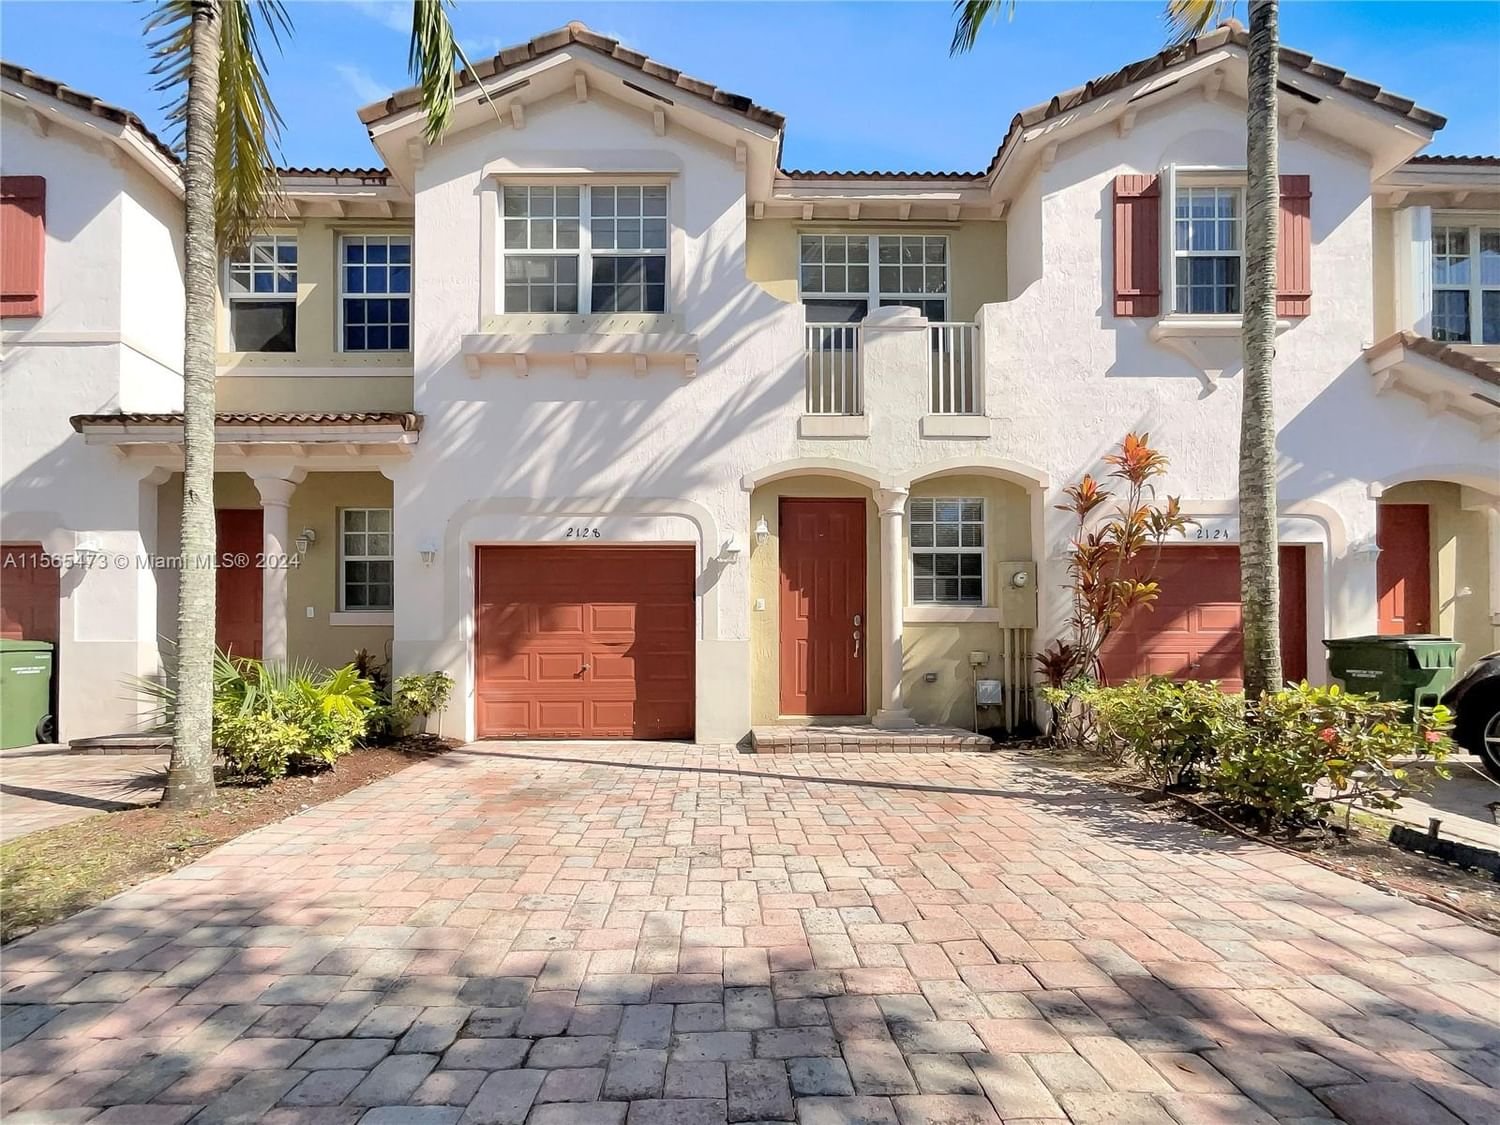 Real estate property located at 2128 3rd Ct, Miami-Dade County, PORTOFINO VILLAS WEST, Homestead, FL